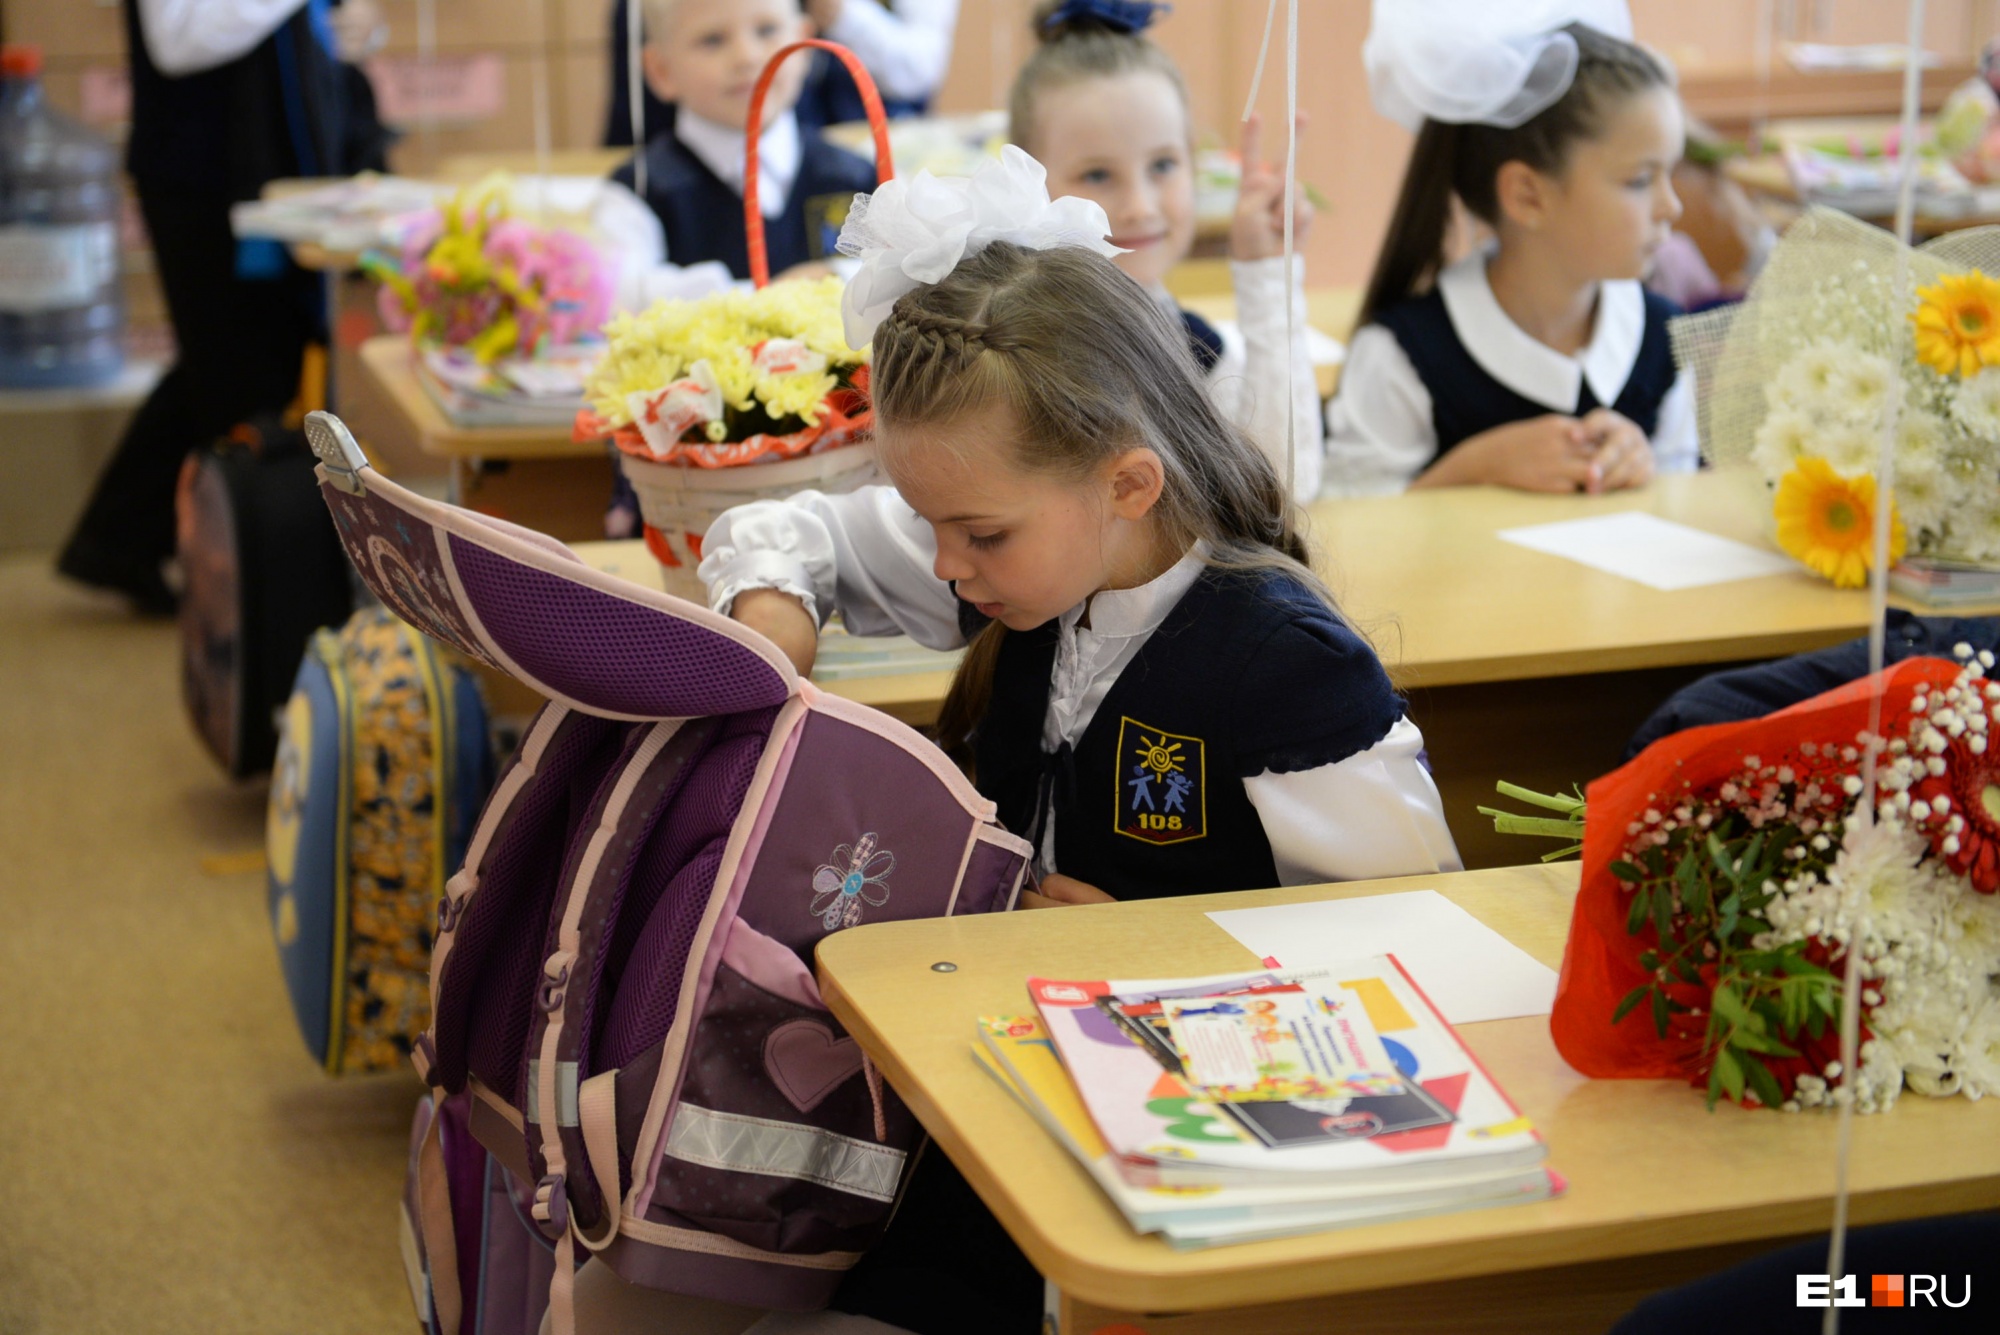 Екатеринбургские школы переведут на пятидневку. Учиться по субботам перестанут даже старшеклассники